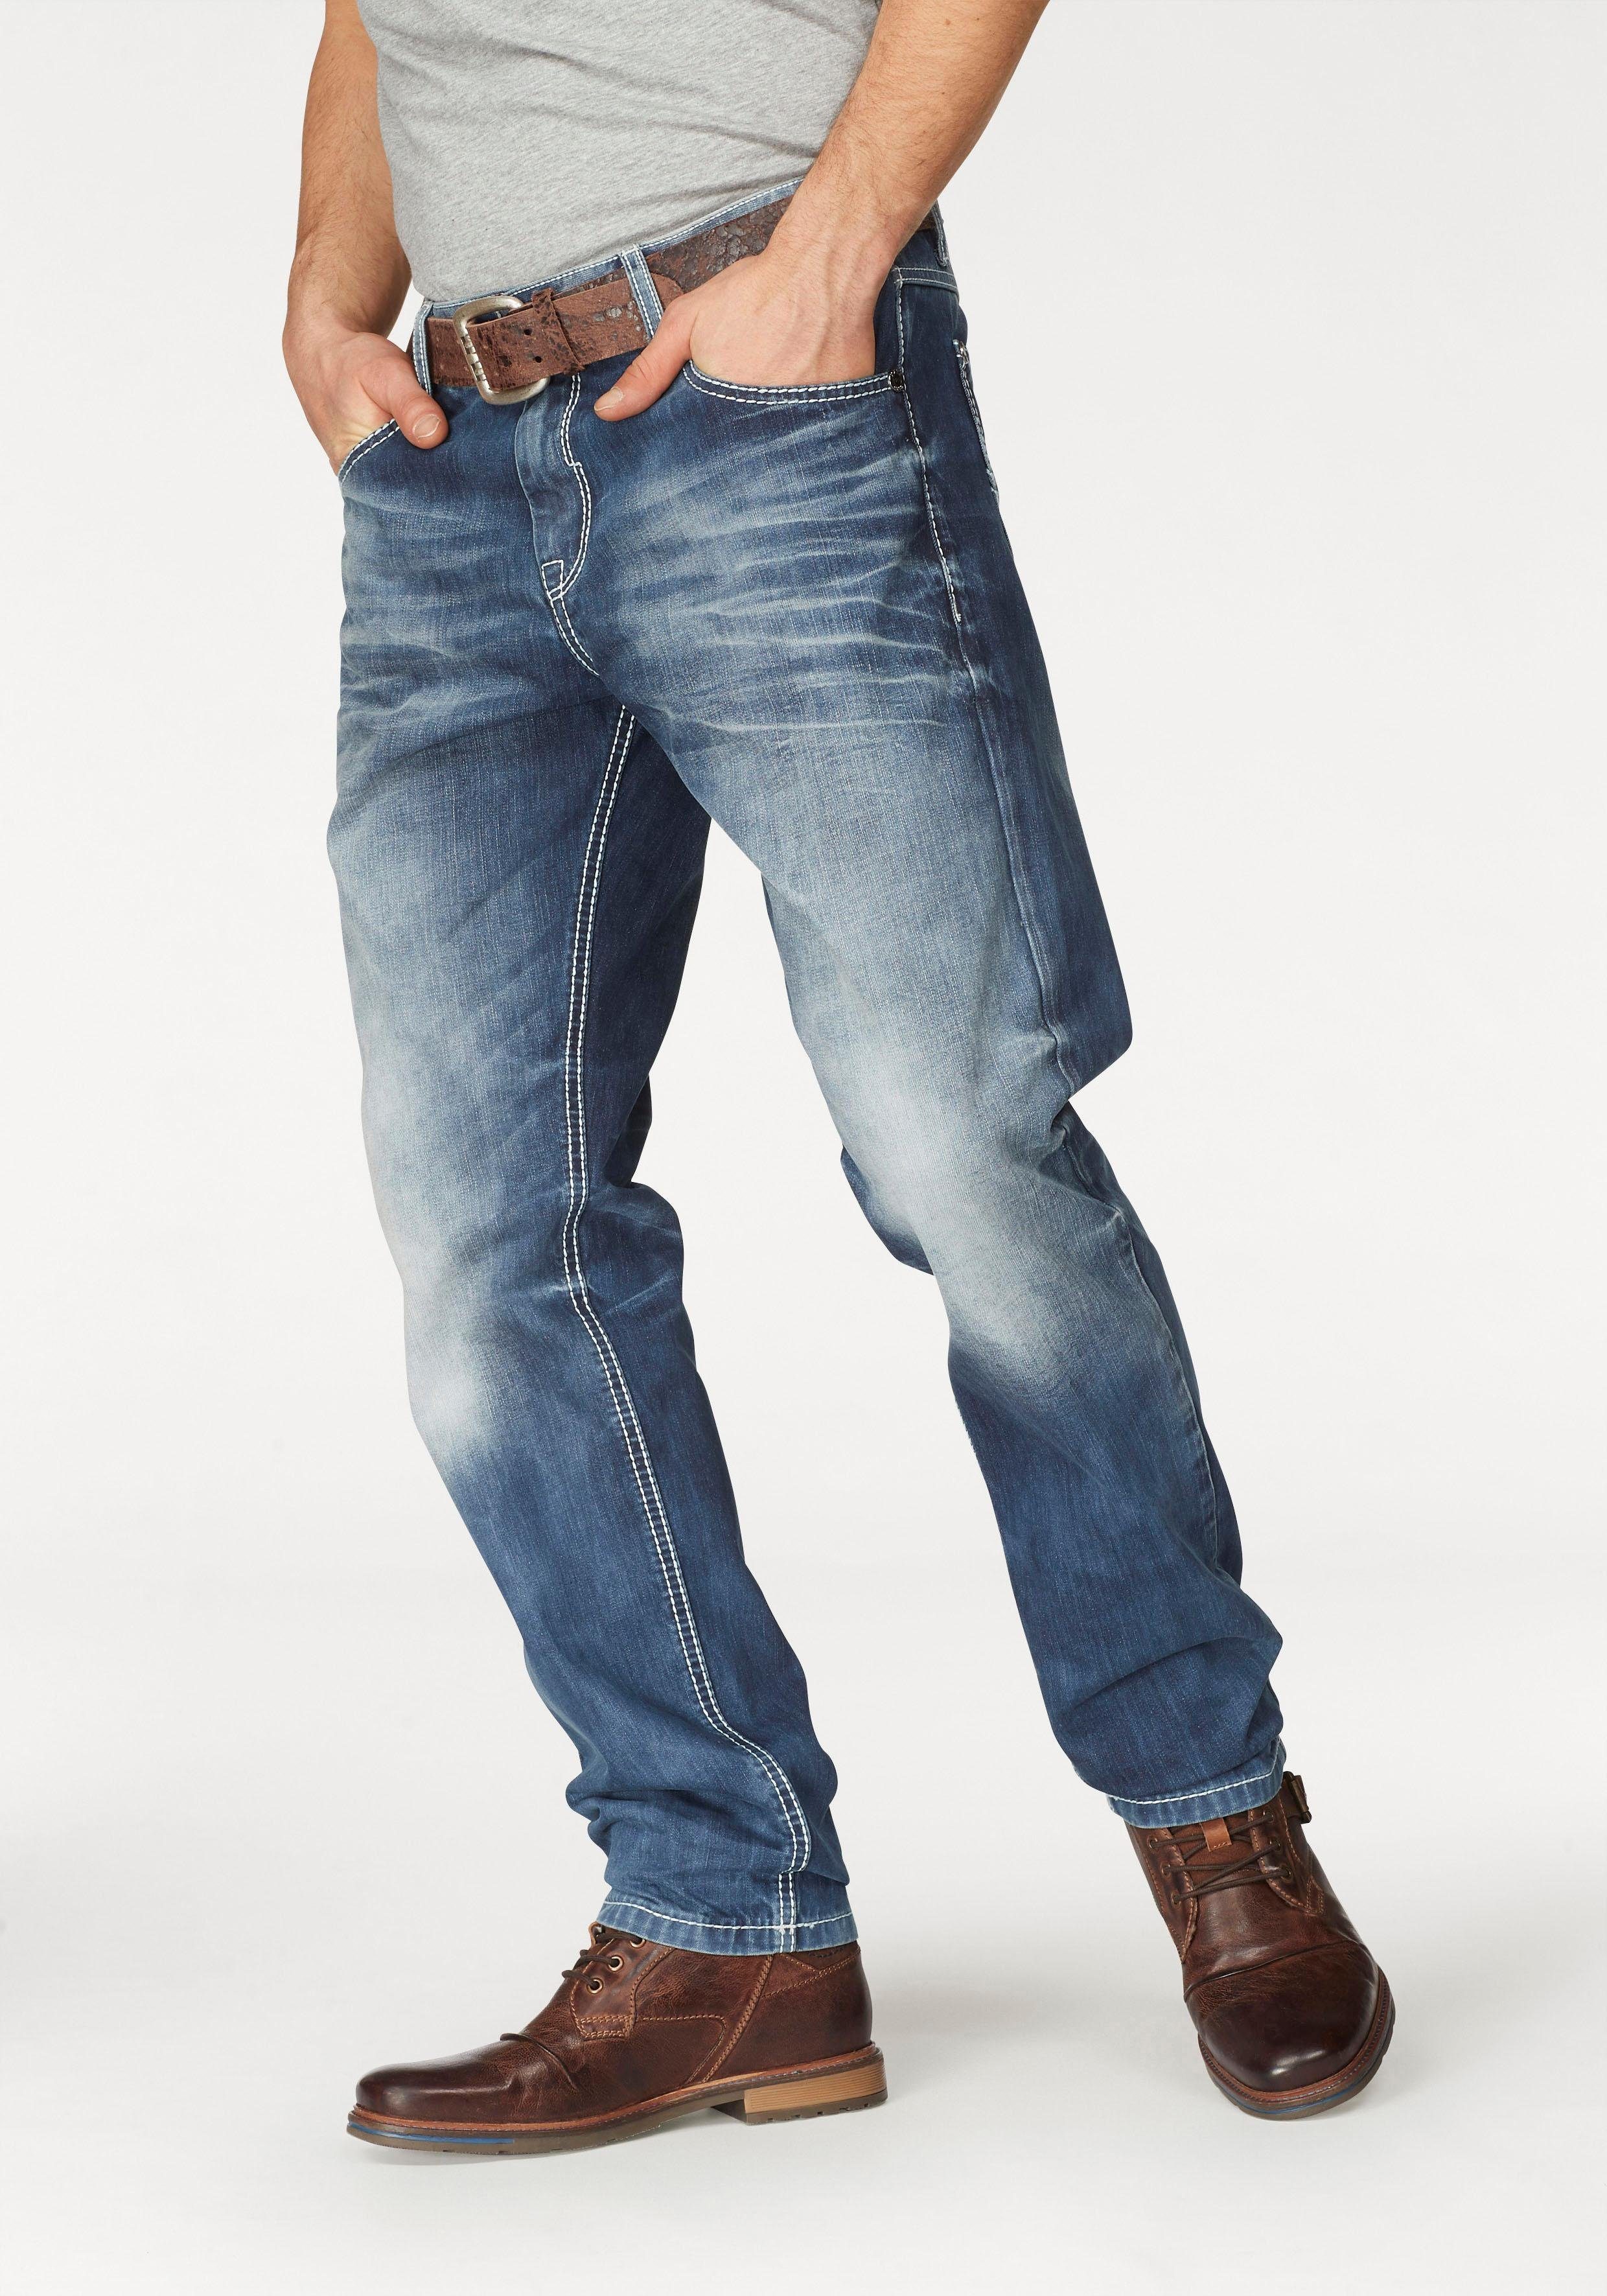 Jeans Herren in großen Größen » Jeans in Übergrößen | OTTO